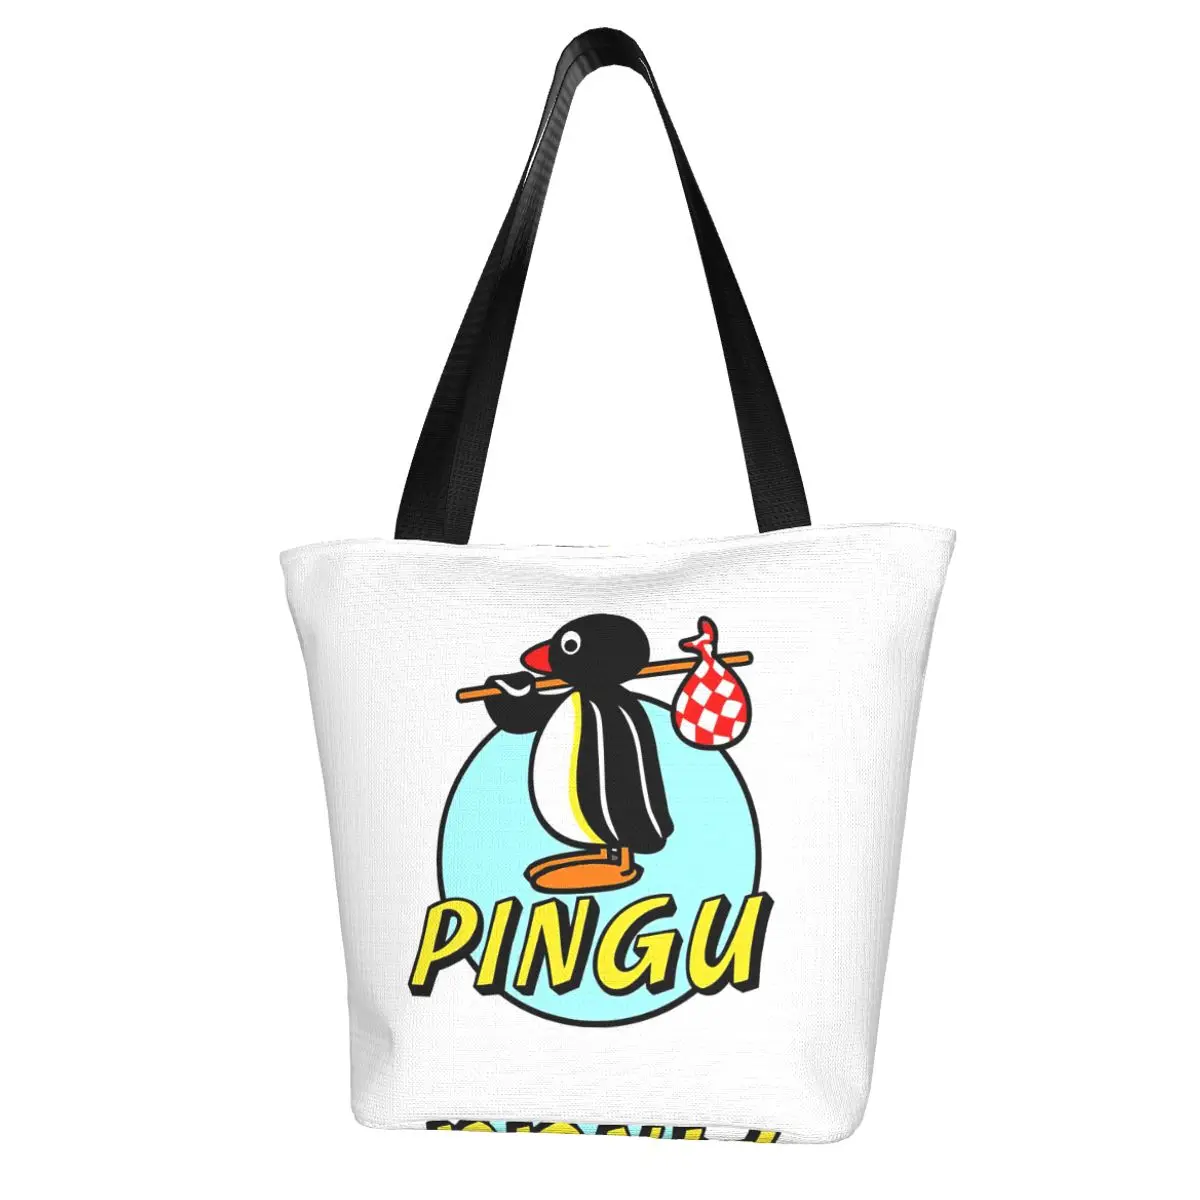 Pingu Shopping Bag Aesthetic Cloth Outdoor Handbag Female Fashion Bags